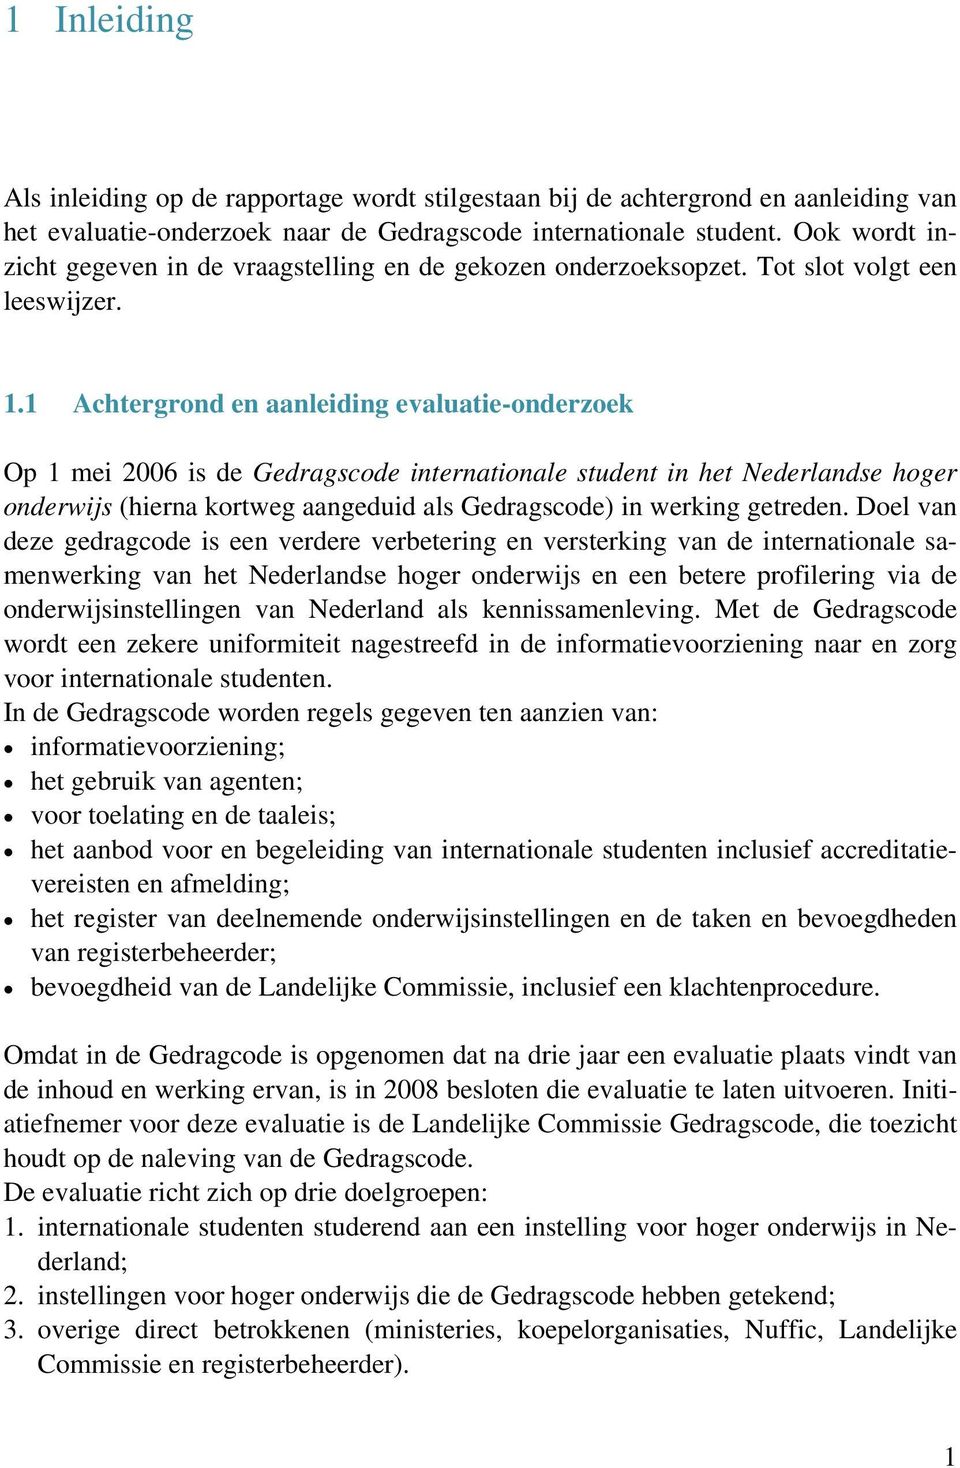 1 Achtergrond en aanleiding evaluatie-onderzoek Op 1 mei 2006 is de Gedragscode internationale student in het Nederlandse hoger onderwijs (hierna kortweg aangeduid als Gedragscode) in werking